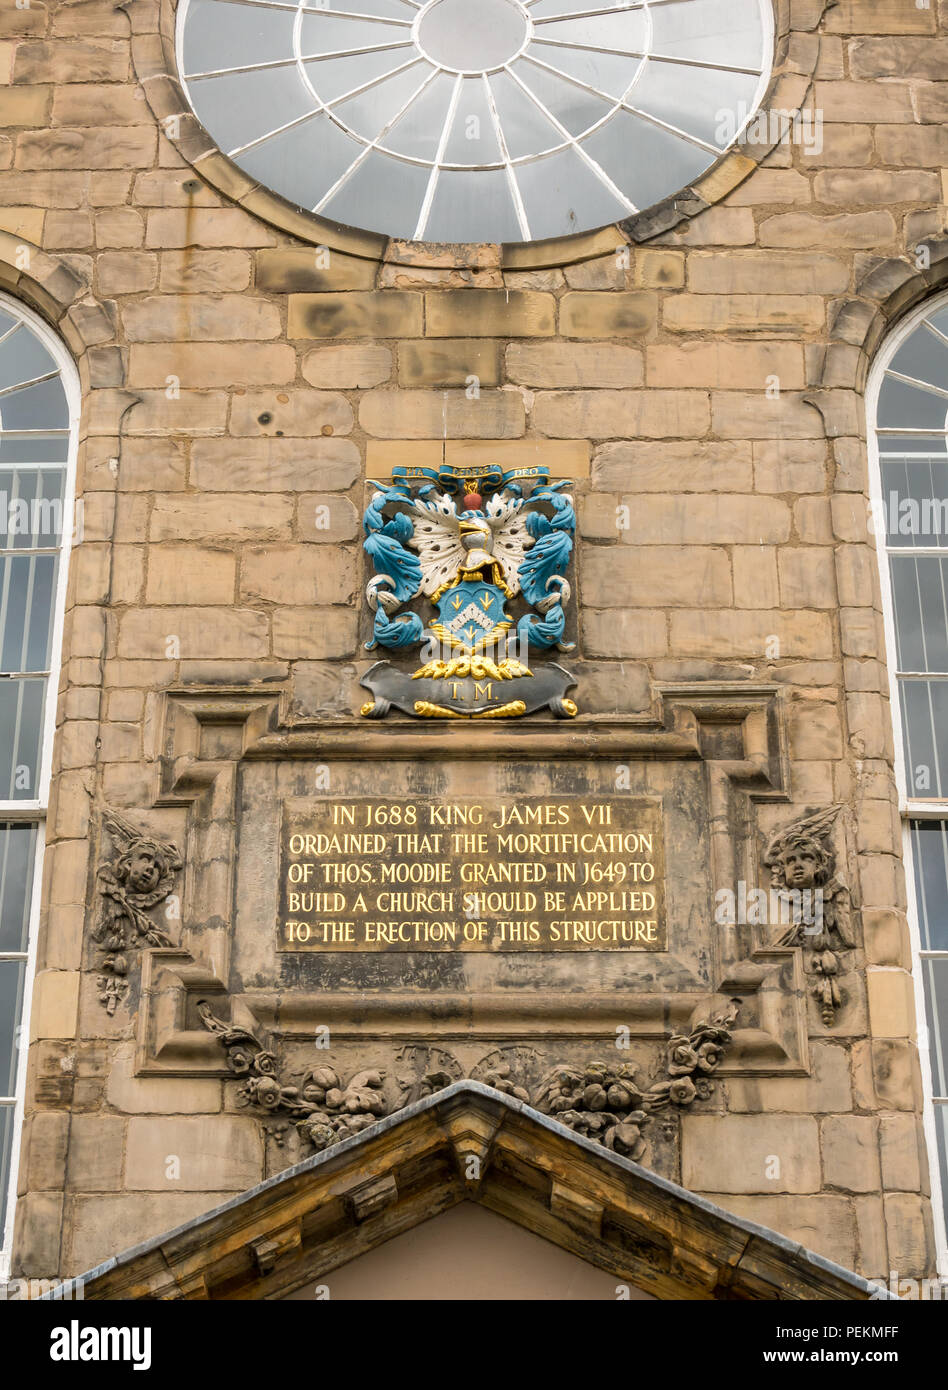 Église de Canongate avec fenêtre ronde, inscription en or 1688 datée de James VII et symboles héraldiques, Royal Mile, Édimbourg, Écosse, Royaume-Uni Banque D'Images